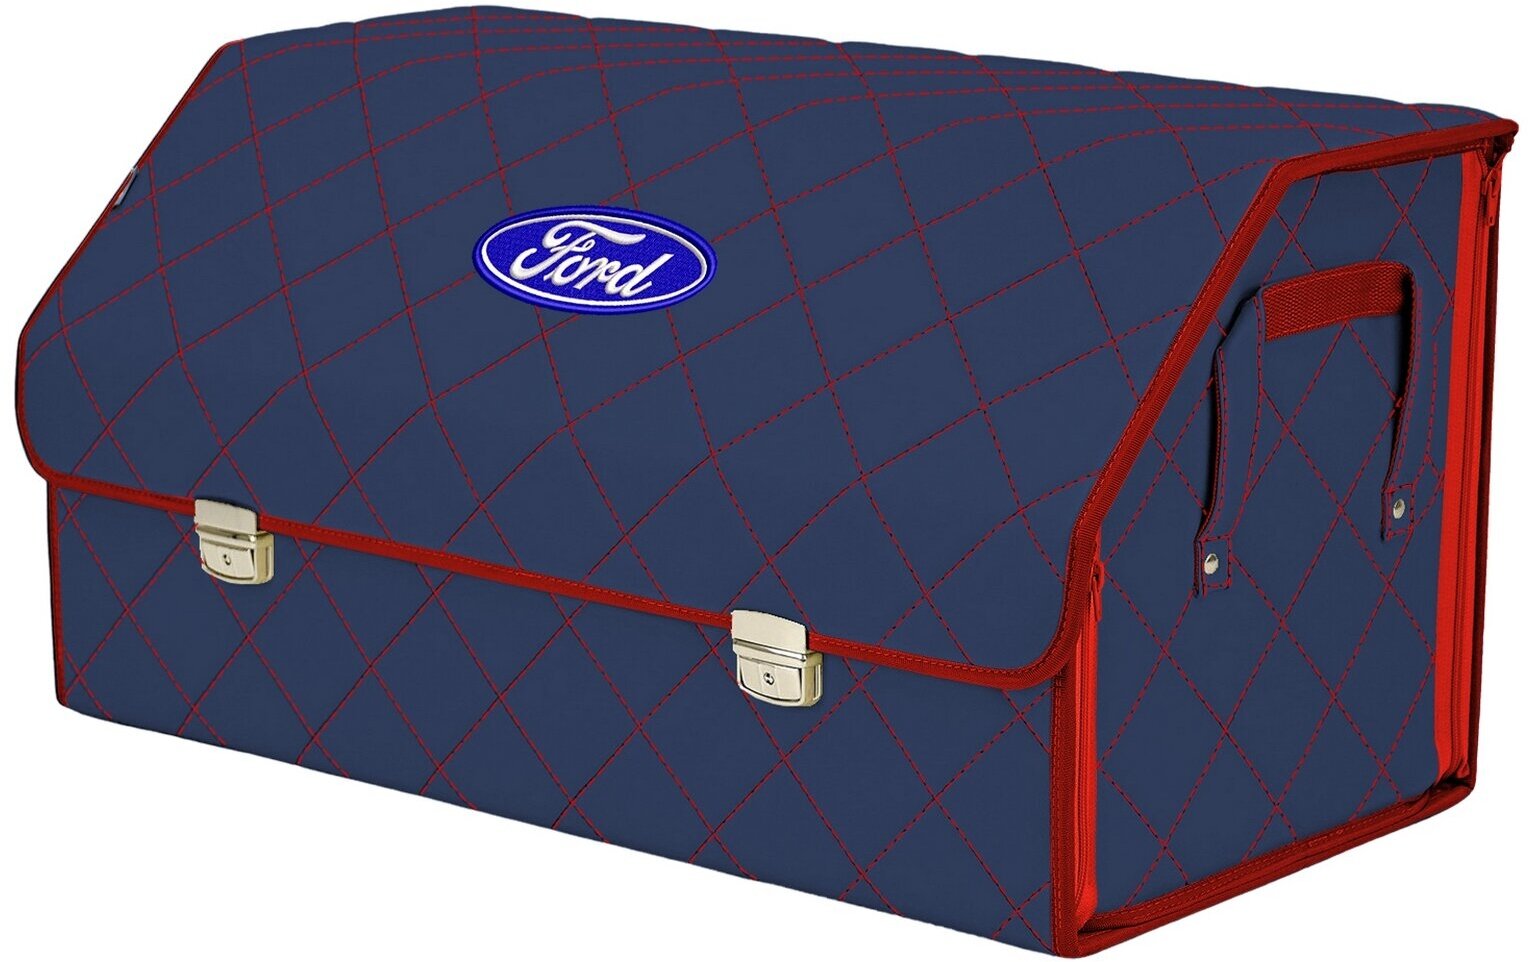 Органайзер-саквояж в багажник "Союз Премиум" (размер XL Plus). Цвет: синий с красной прострочкой Ромб и вышивкой Ford (Форд).